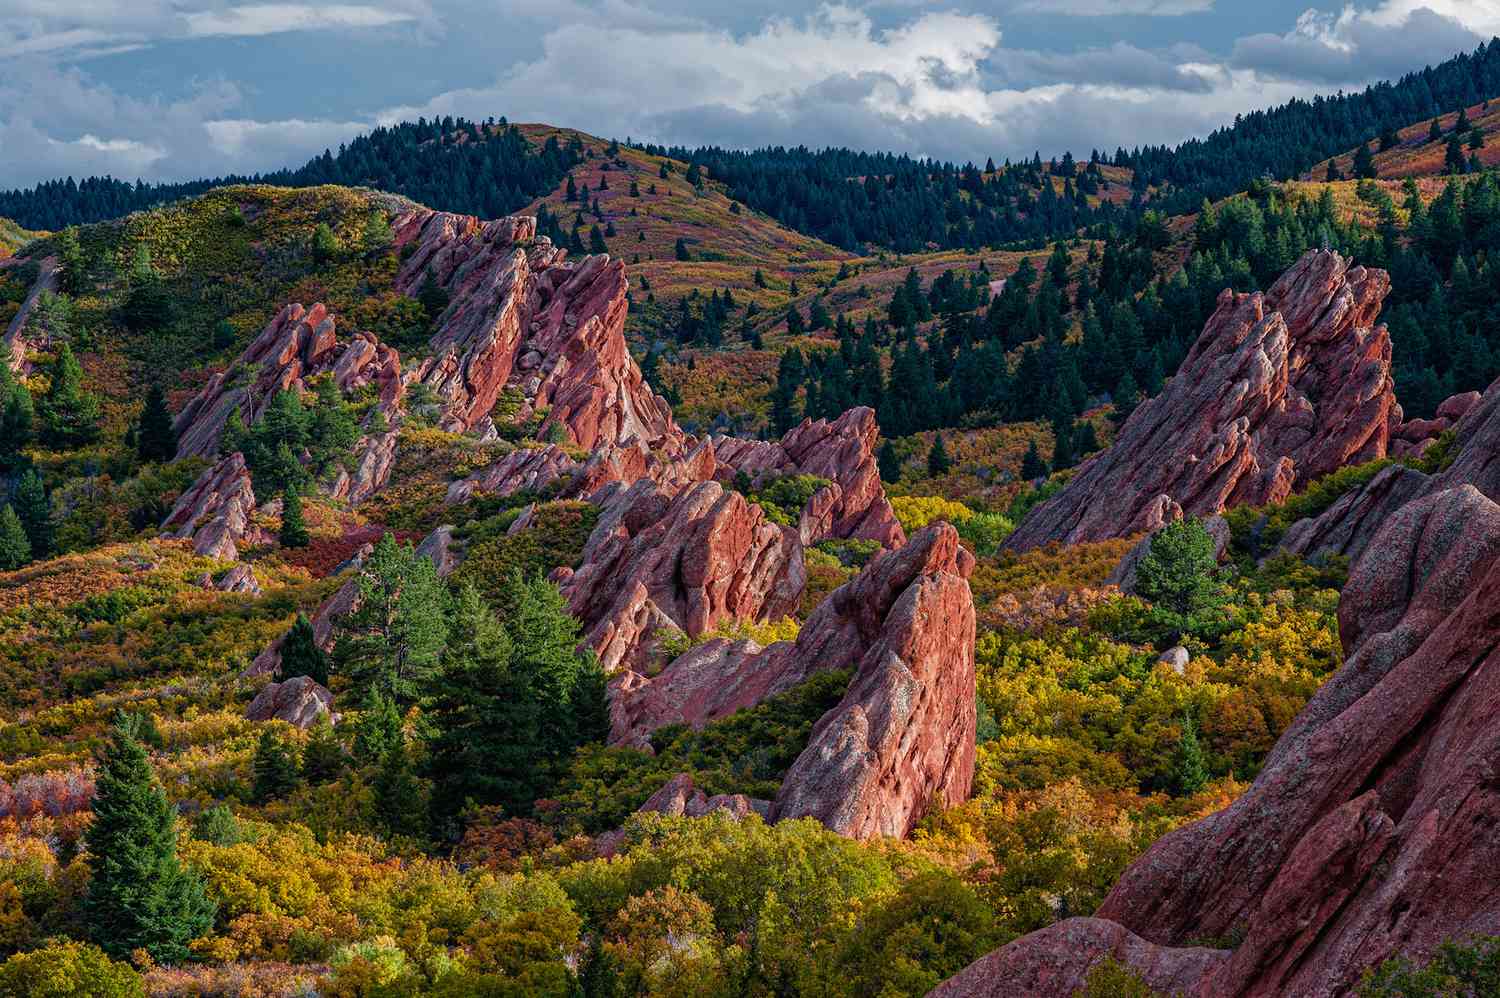 Avis de formations rocheuses à Roxborough State Park près de Denver, Colorado